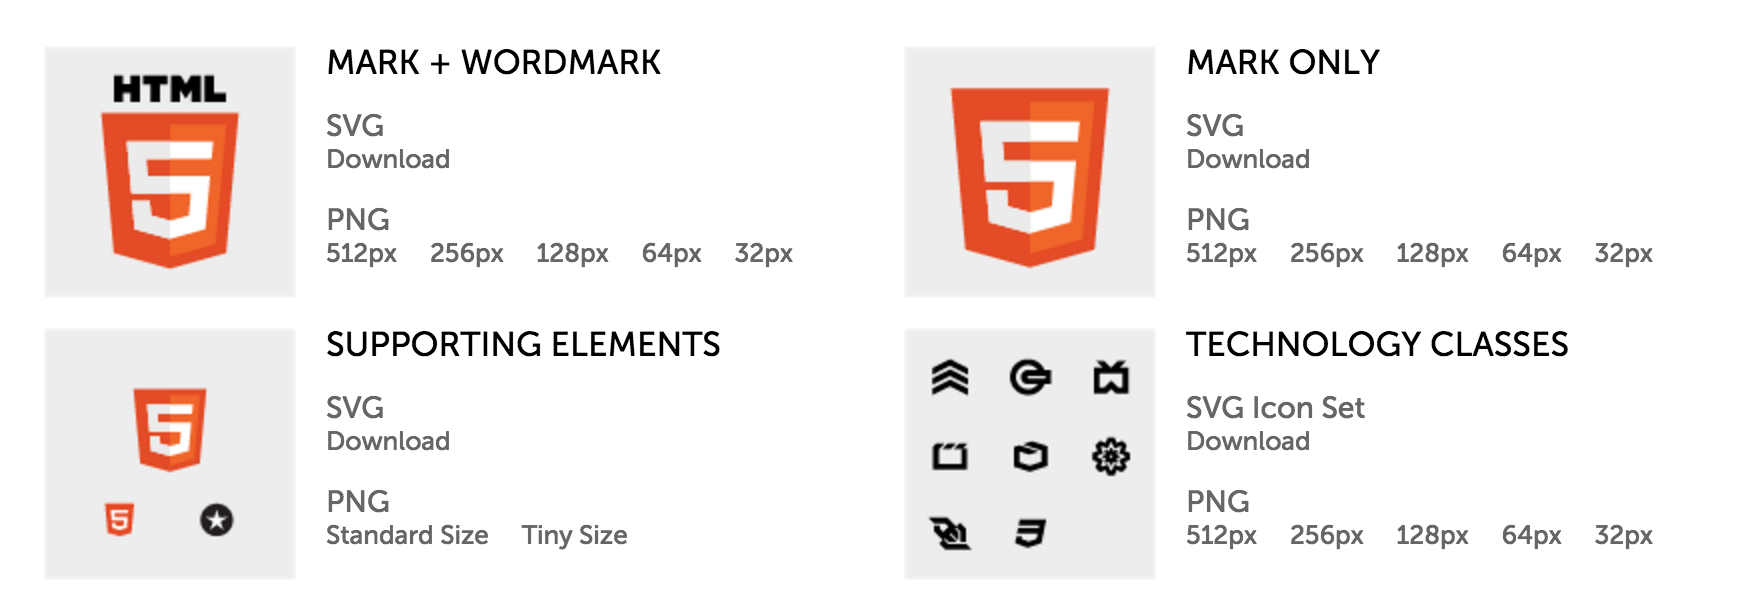 Le logo HTML5